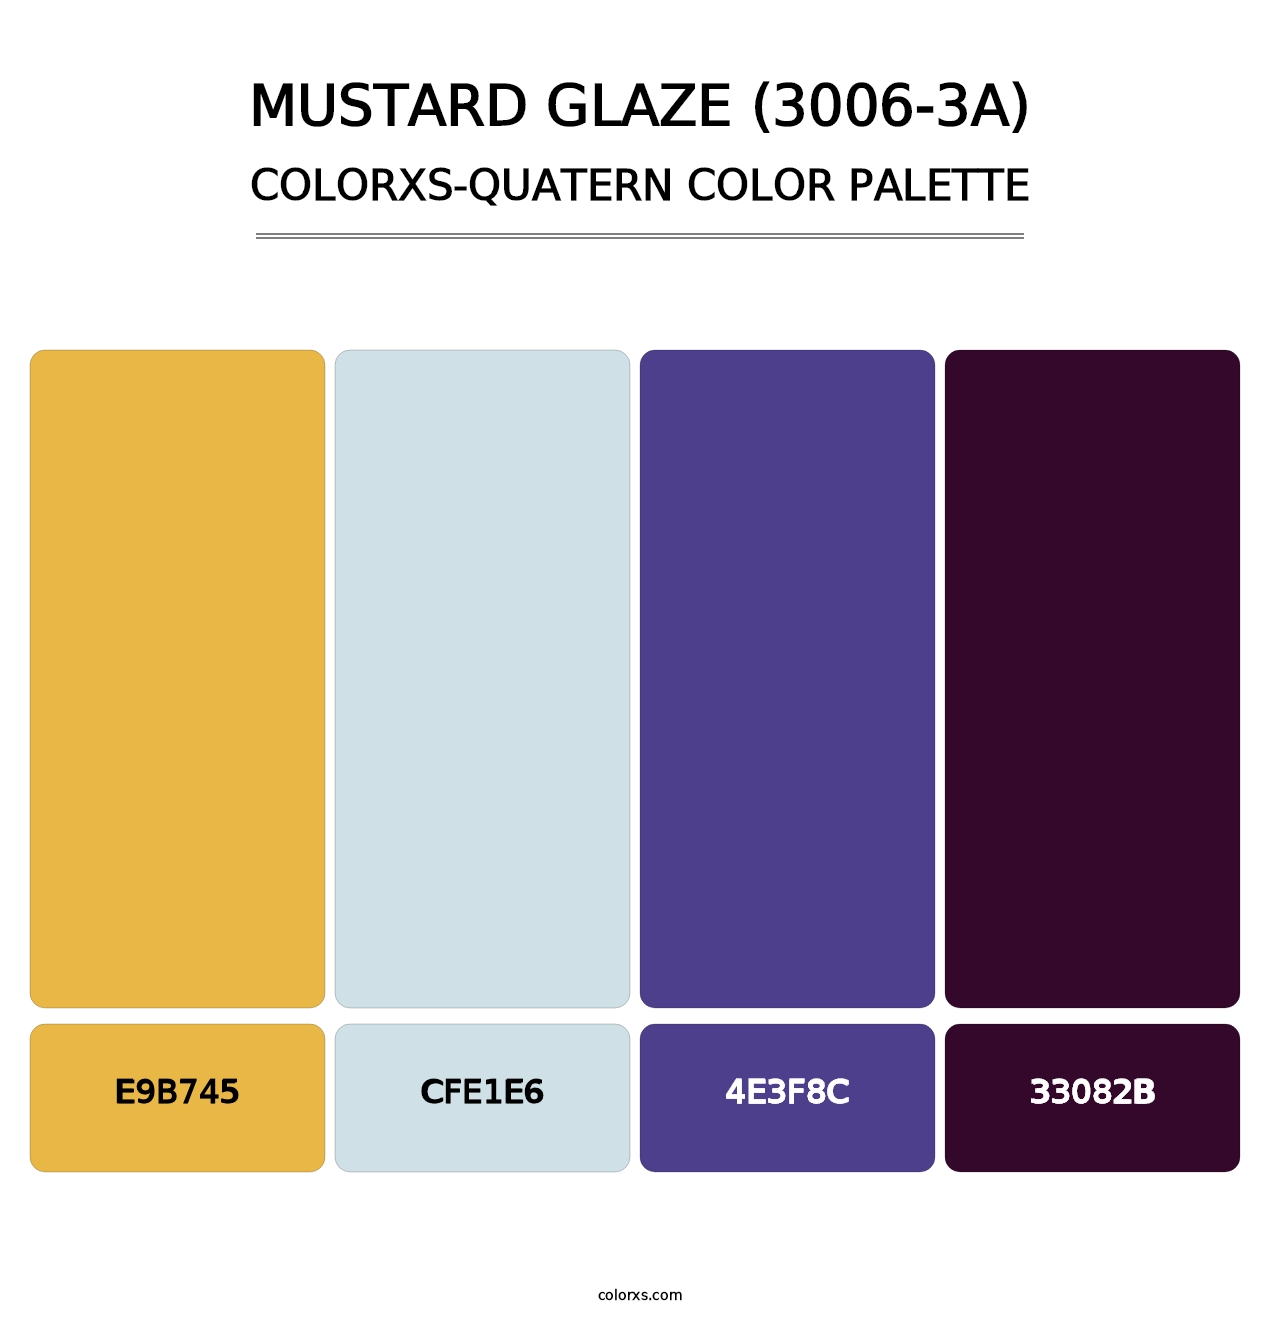 Mustard Glaze (3006-3A) - Colorxs Quatern Palette